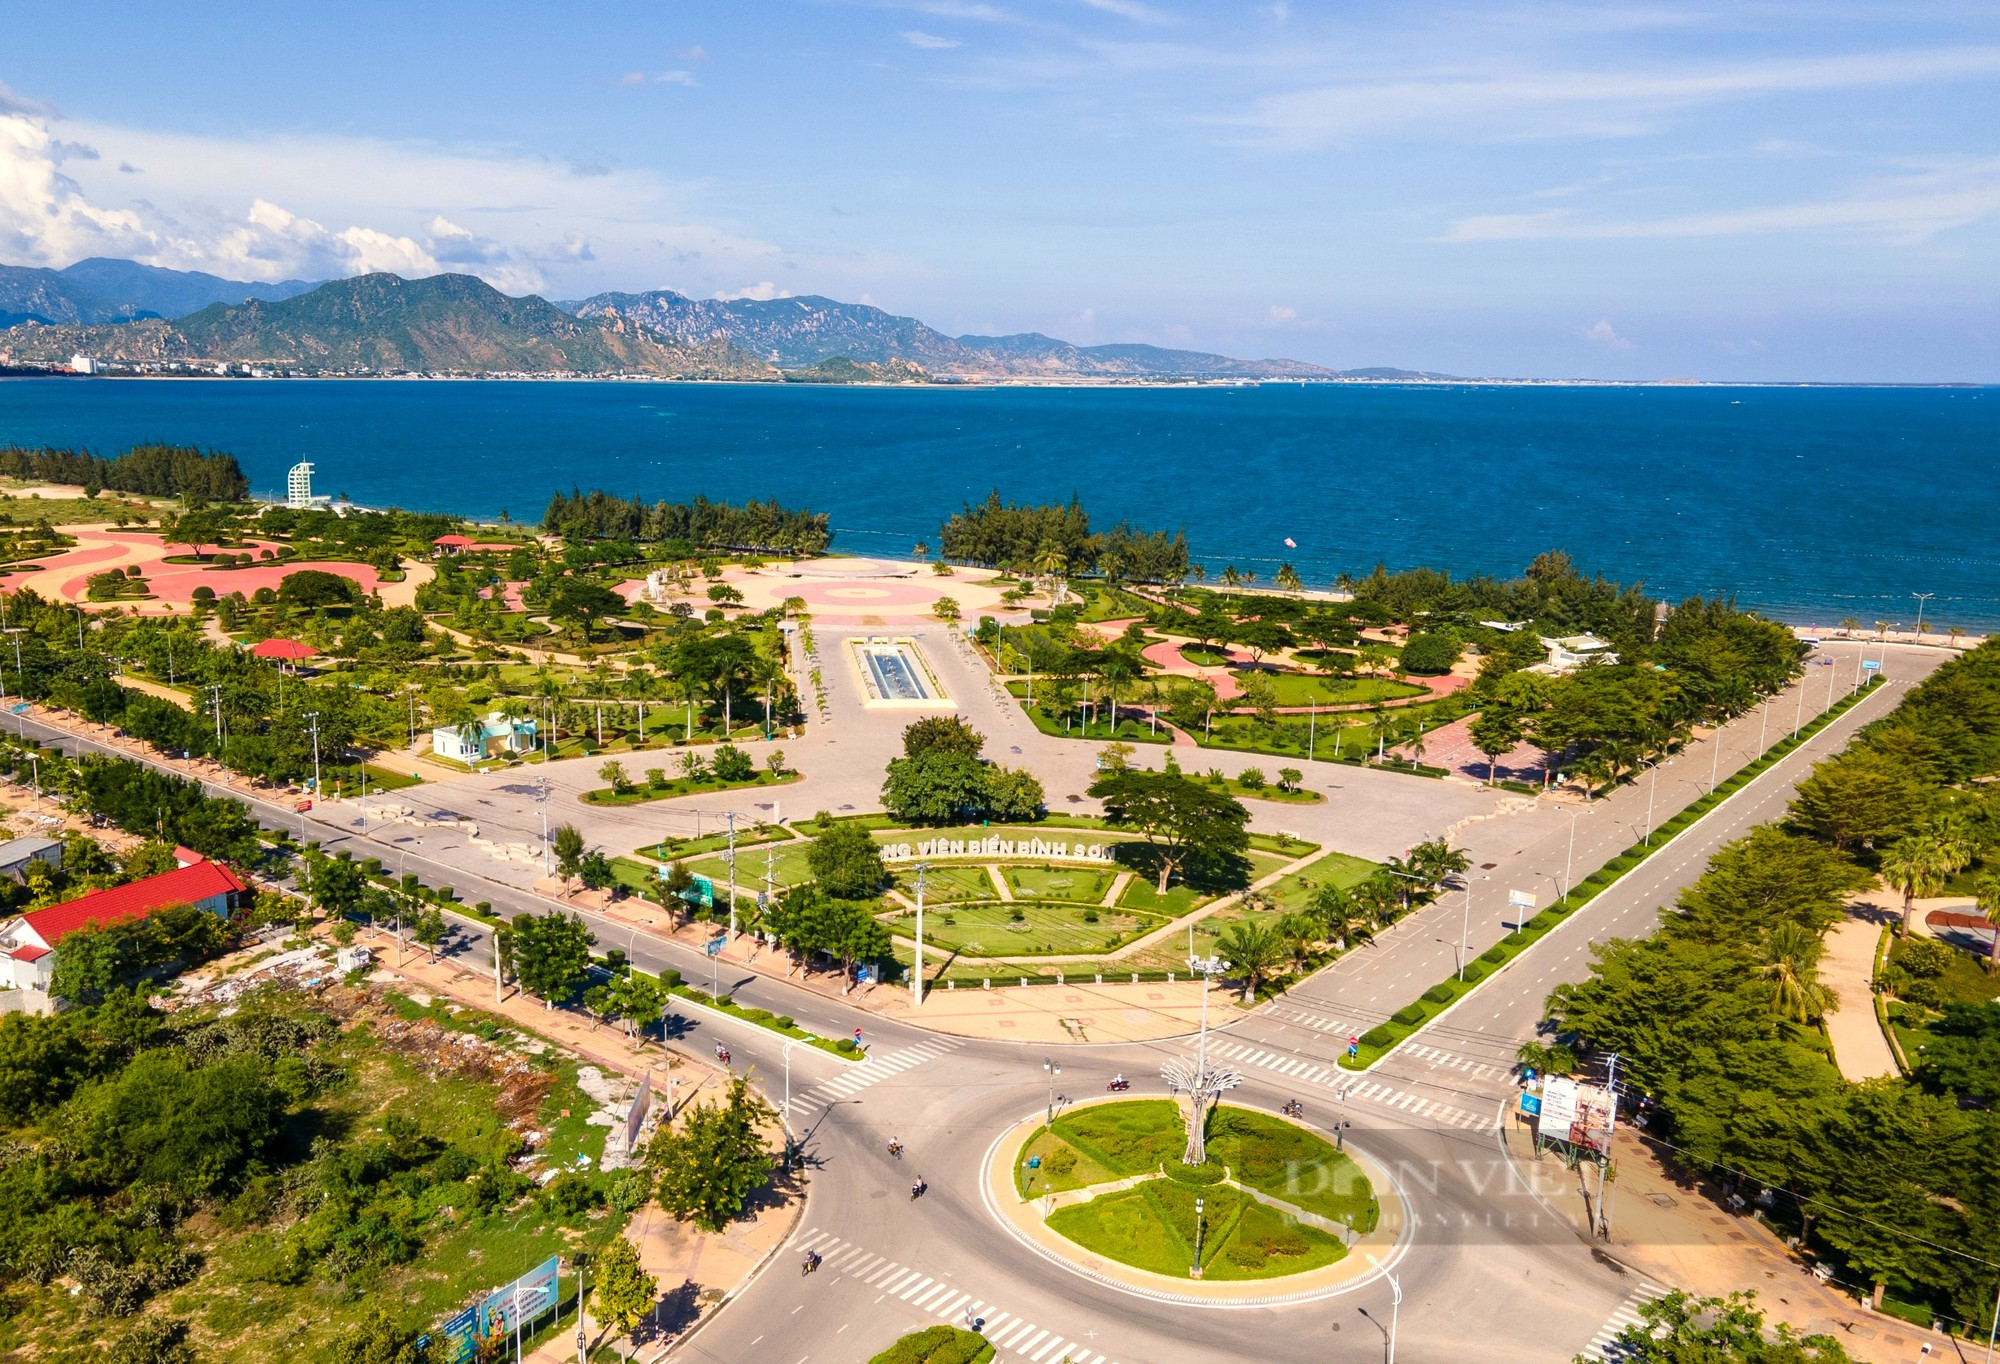 Công viên biển ghi dấu 16 sự kiện lịch sử phát triển của Đảng bộ tỉnh Ninh Thuận - Ảnh 1.